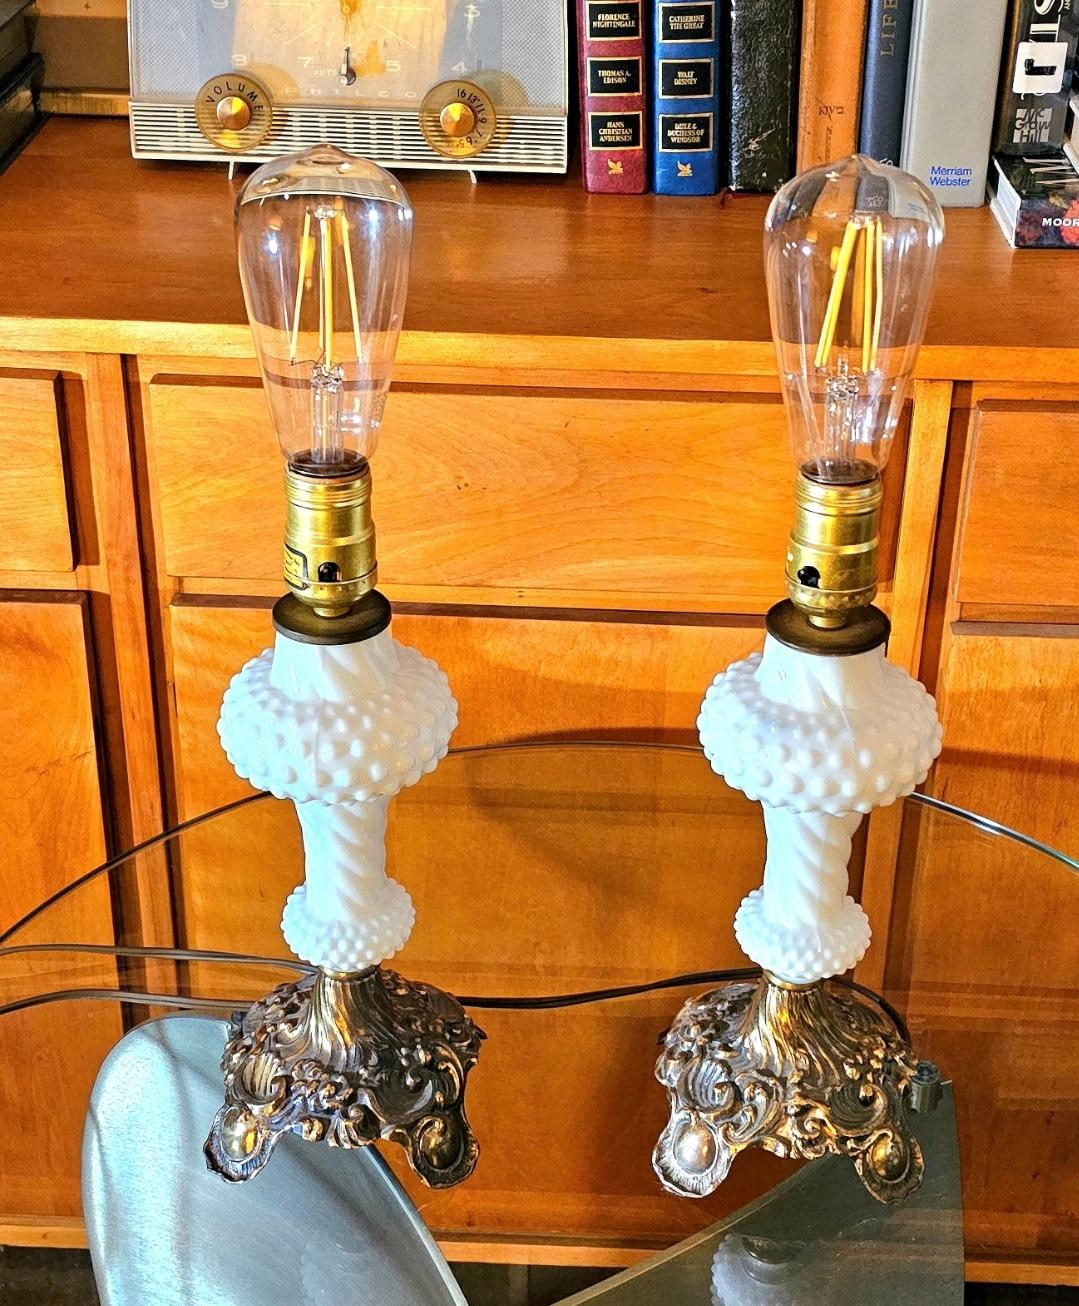 Vintage Paar Hobnail-Lampen aus Milchglas und Messing.
Hollywood Regentschaft.
1940s